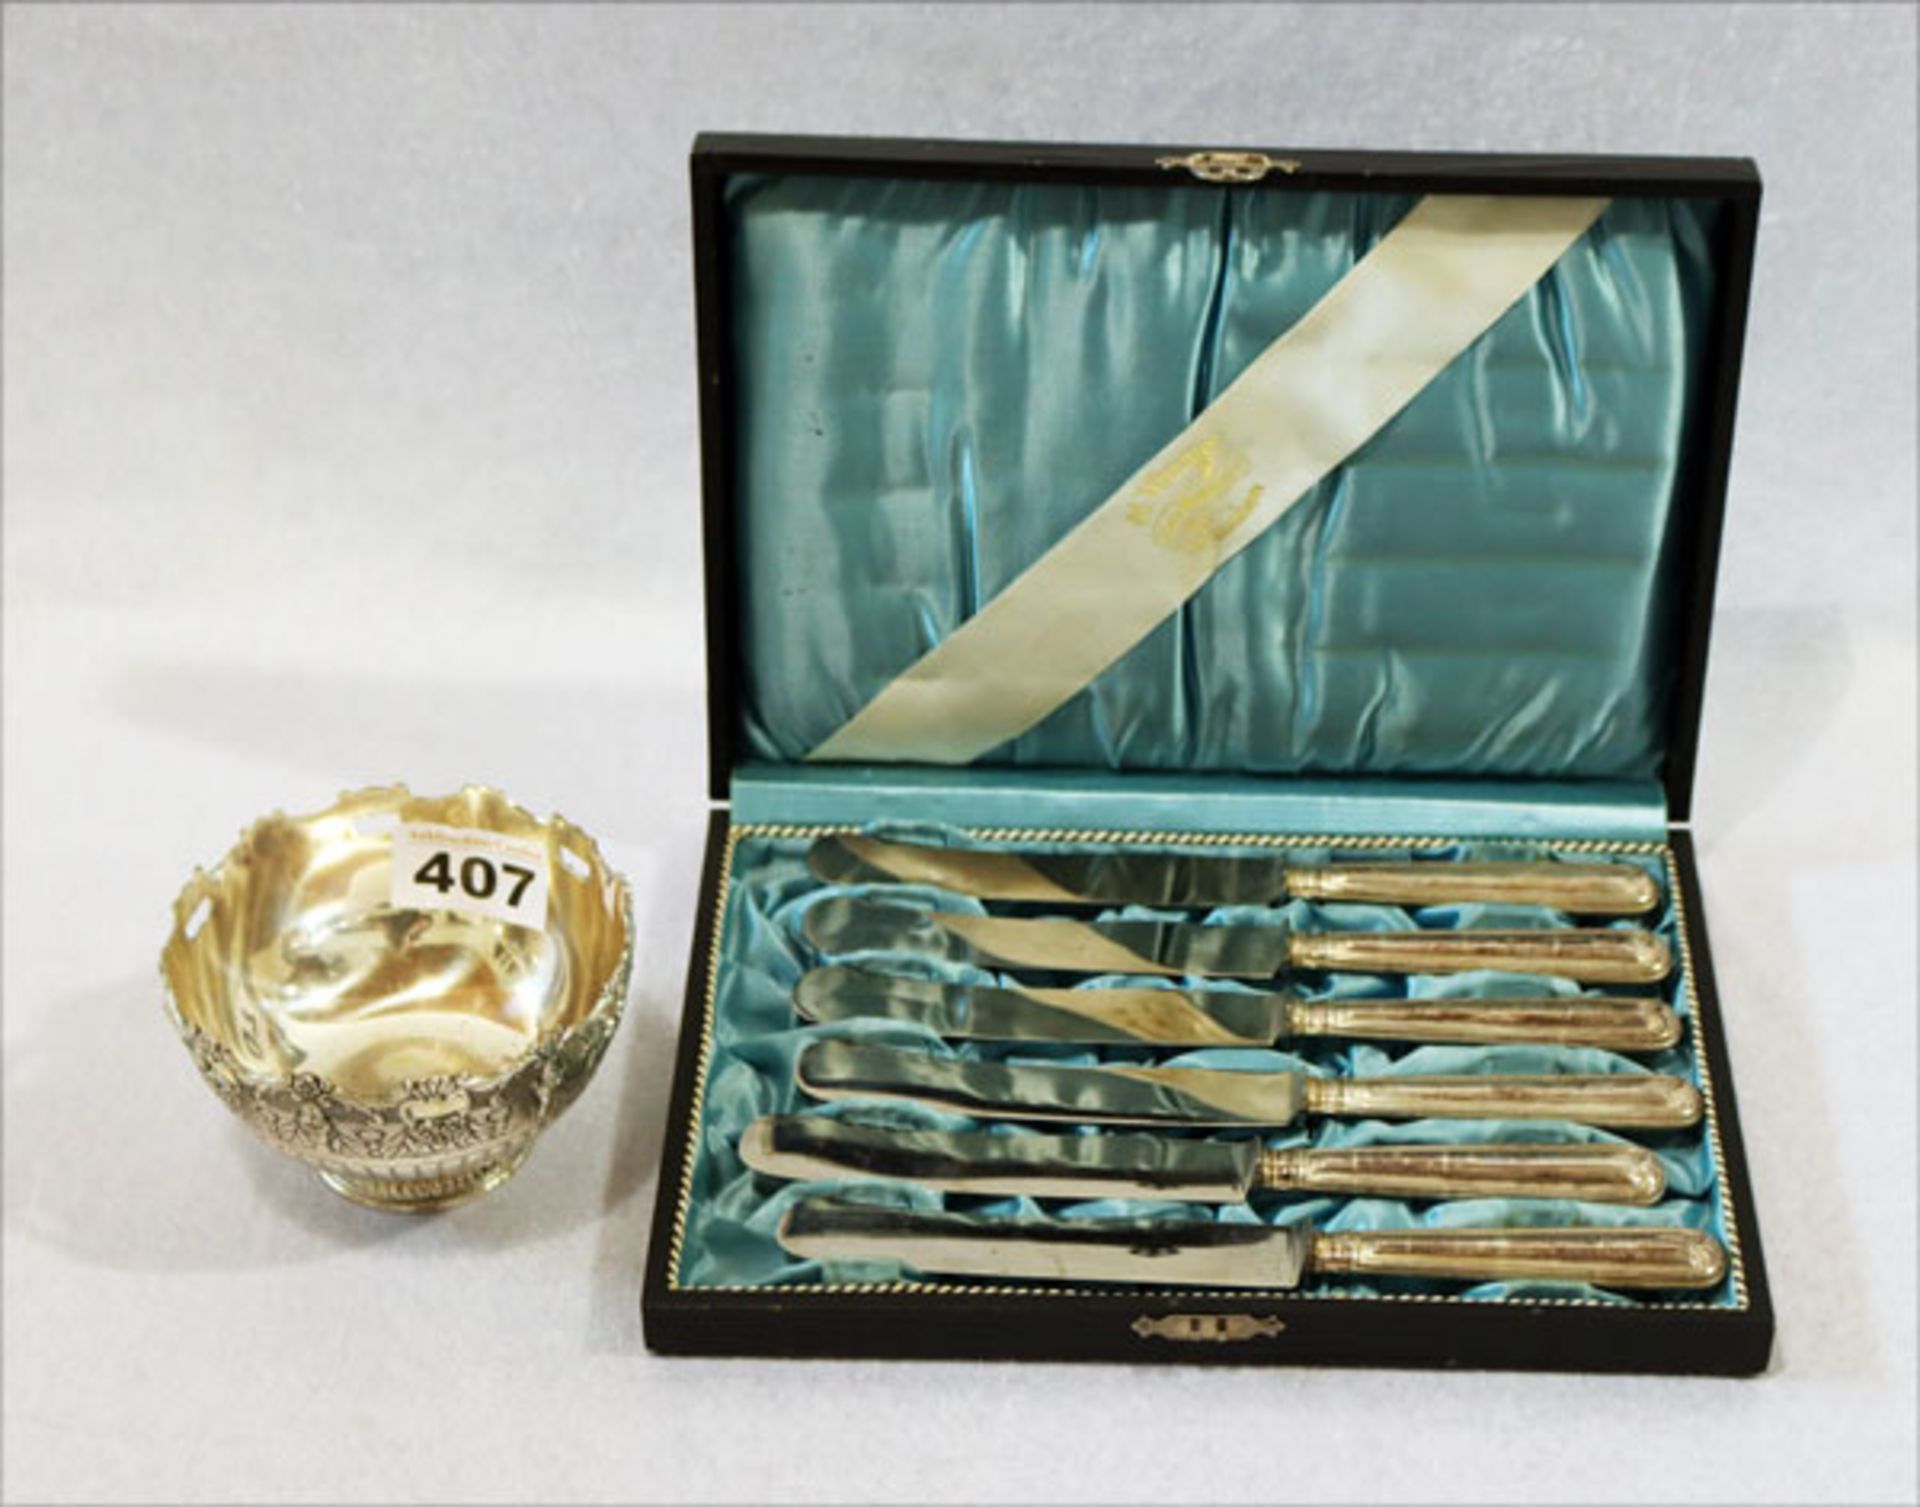 6 Messer mit versilberten Griffen in Etui, und versilberte Schale mit Reliefdekor, H 6 cm, D 10